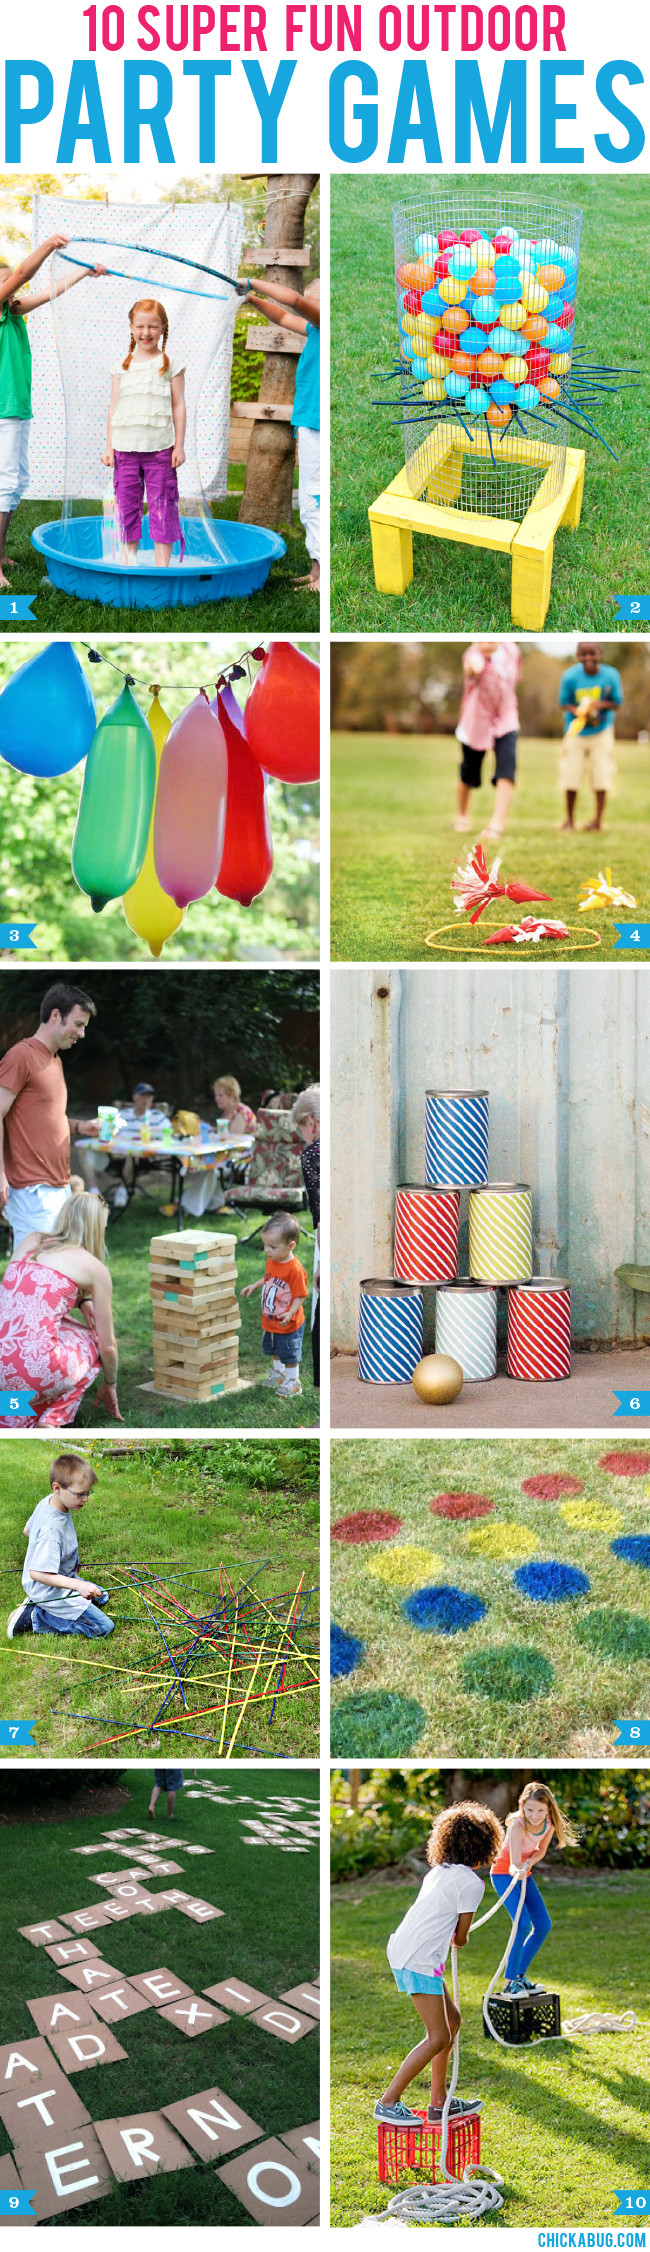 Backyard Party Games Ideas
 10 super fun outdoor party games